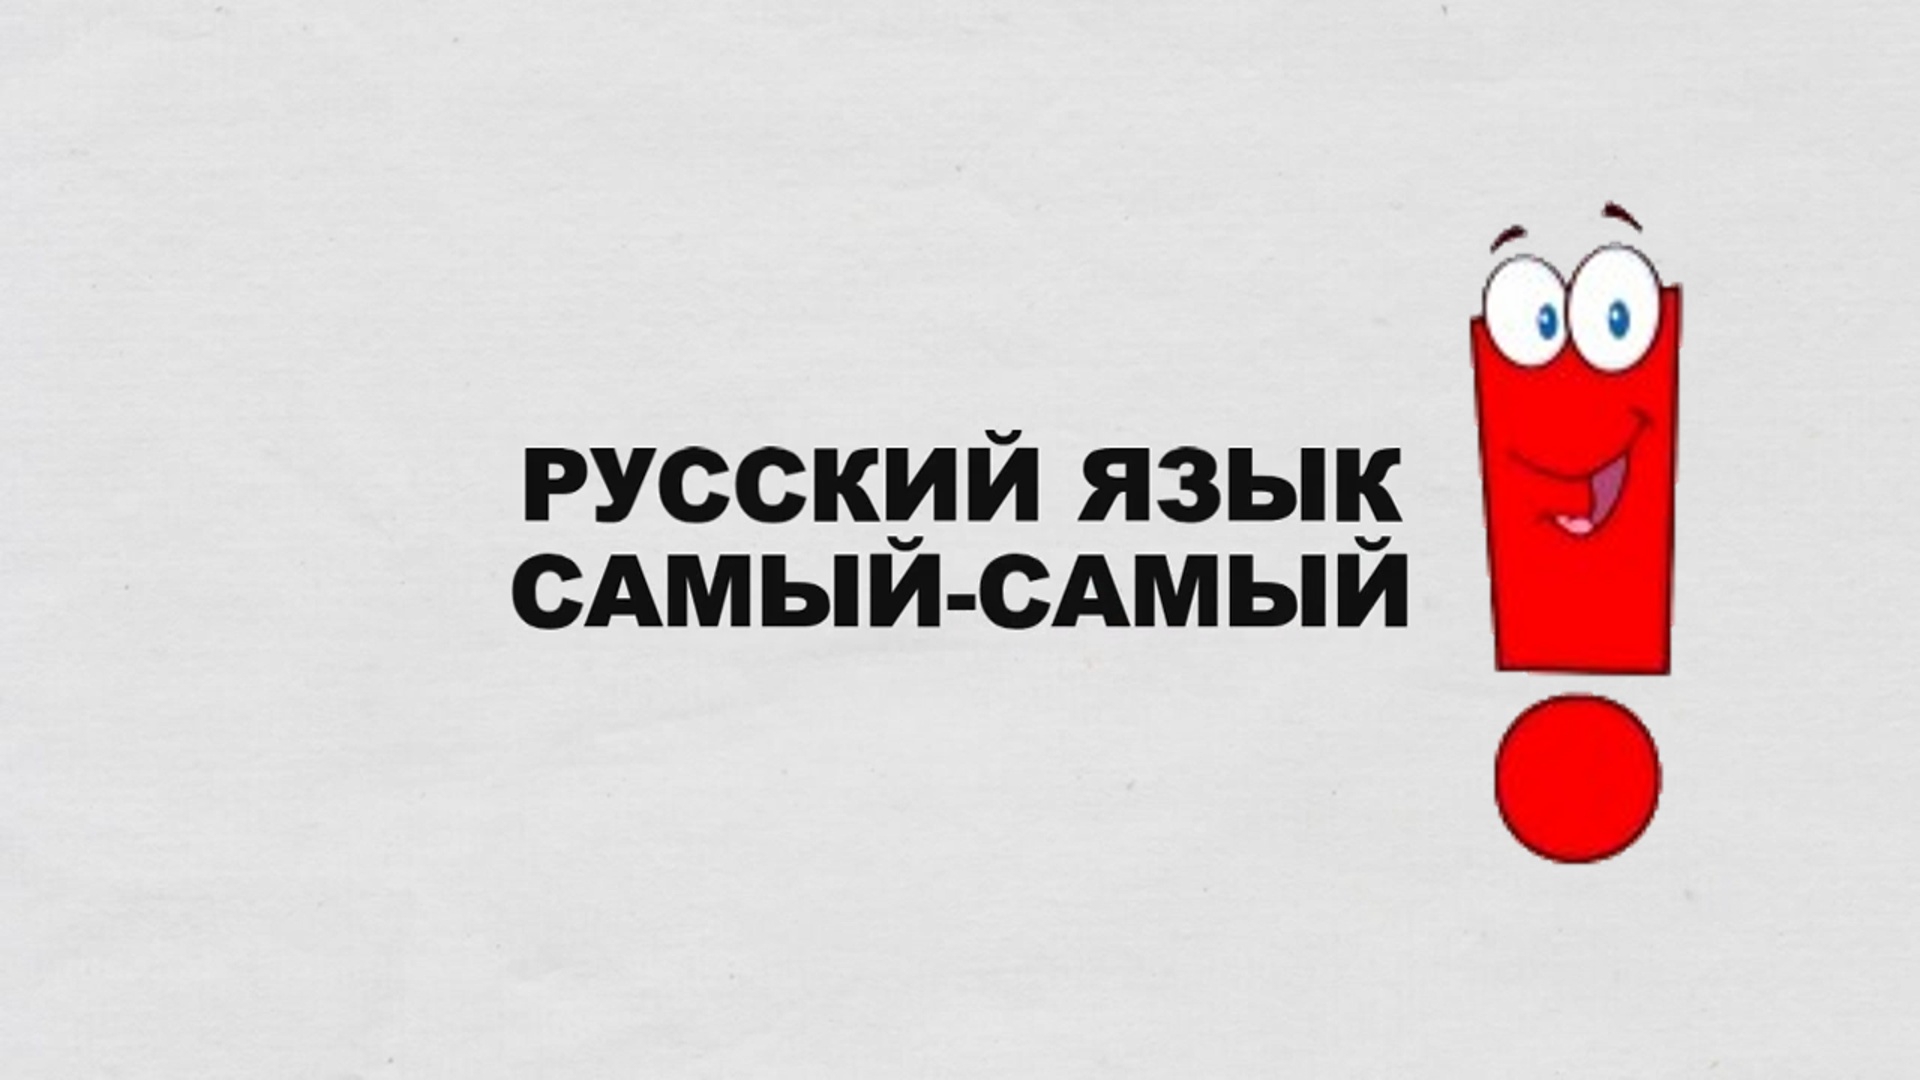 Включи лучше слов. Русский язык. Социальная реклама русского языка. Русский язык лучший. Я русский.